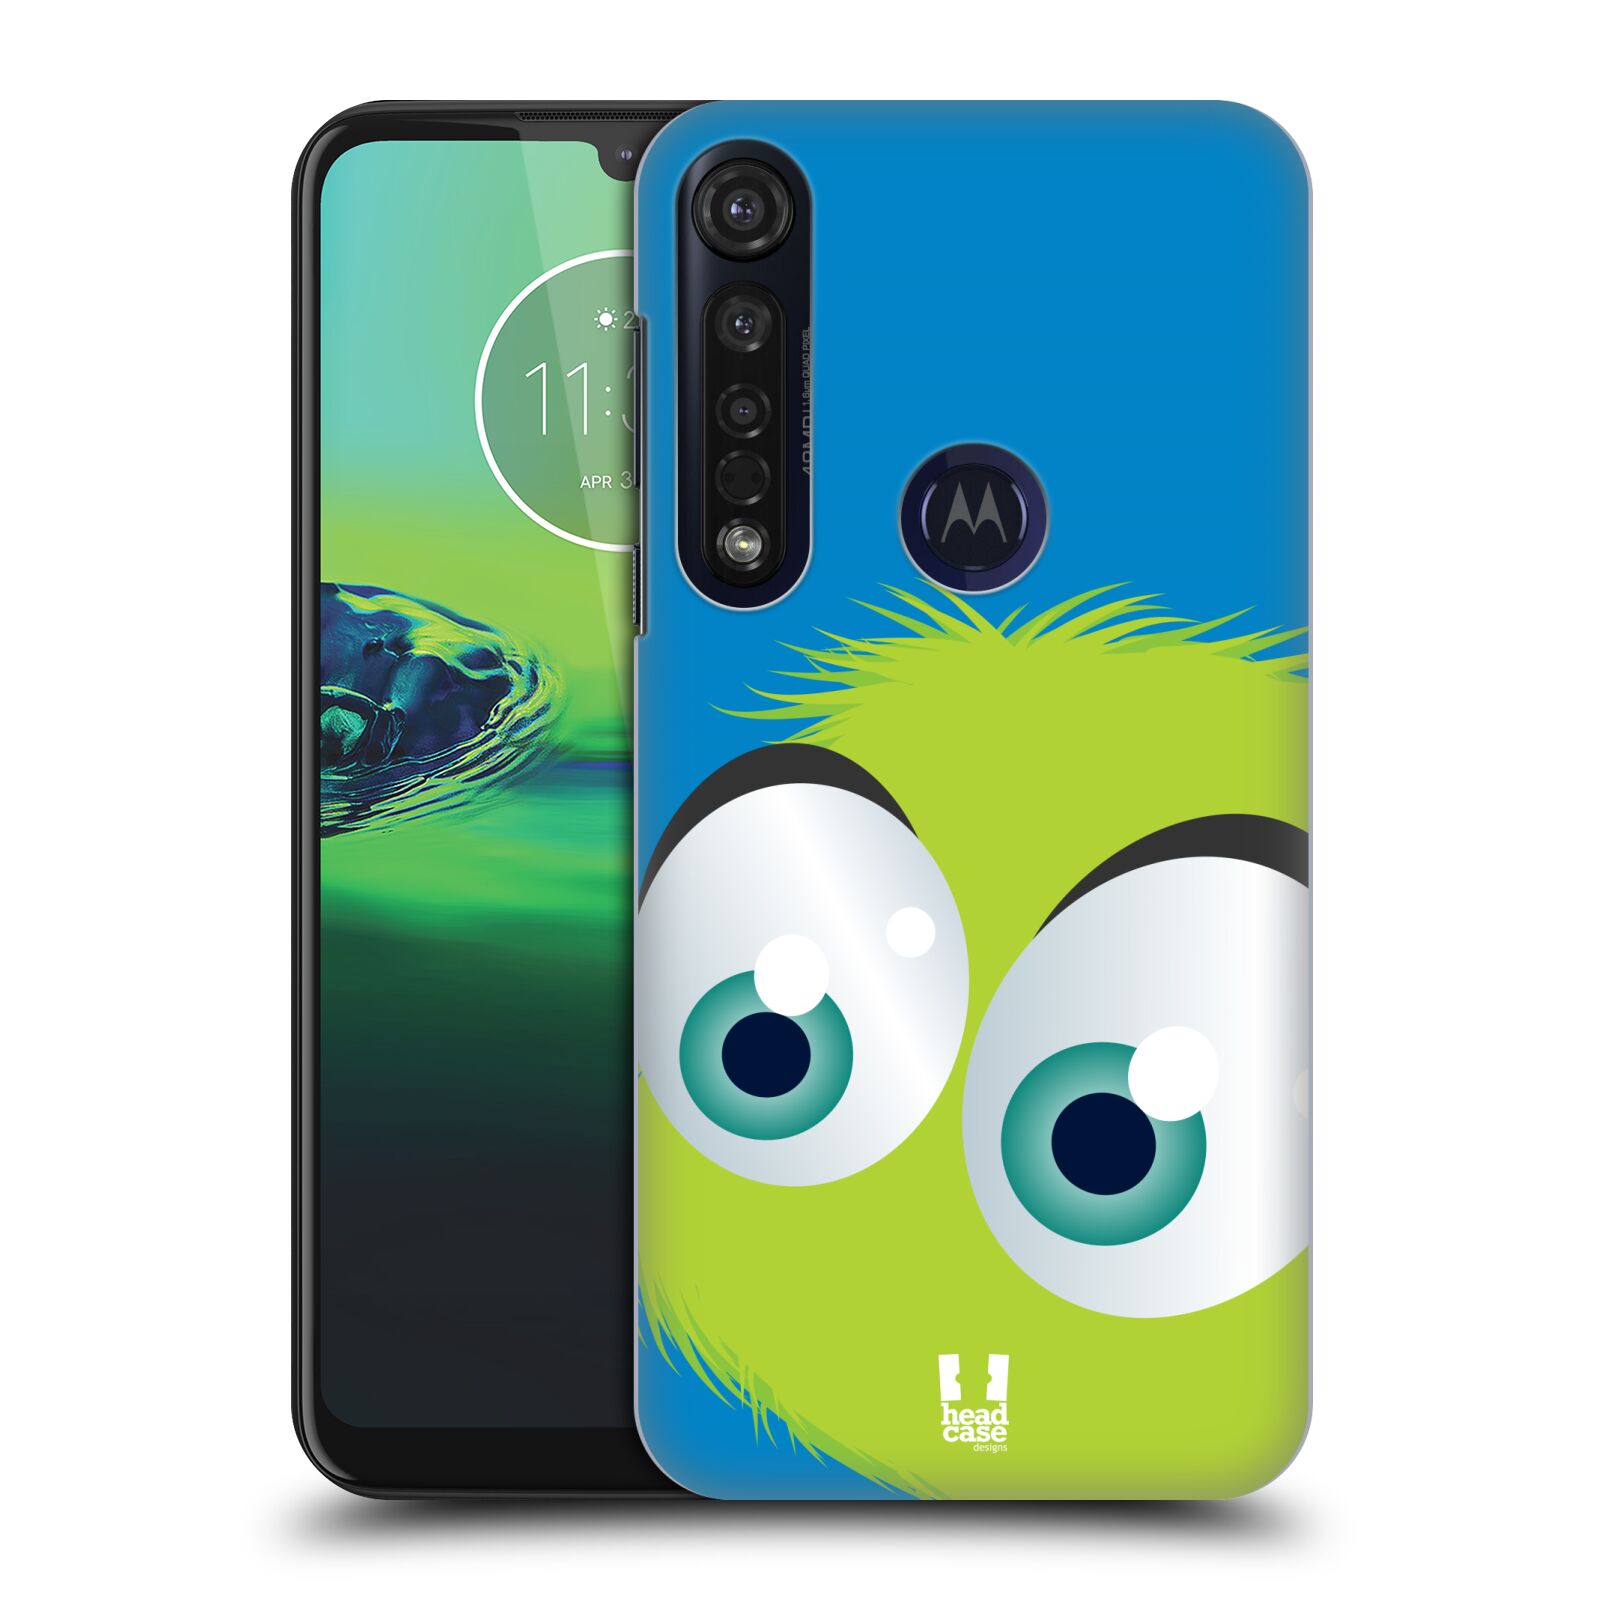 Pouzdro na mobil Motorola Moto G8 PLUS - HEAD CASE - vzor Barevný chlupatý smajlík ZELENÁ modré pozadí